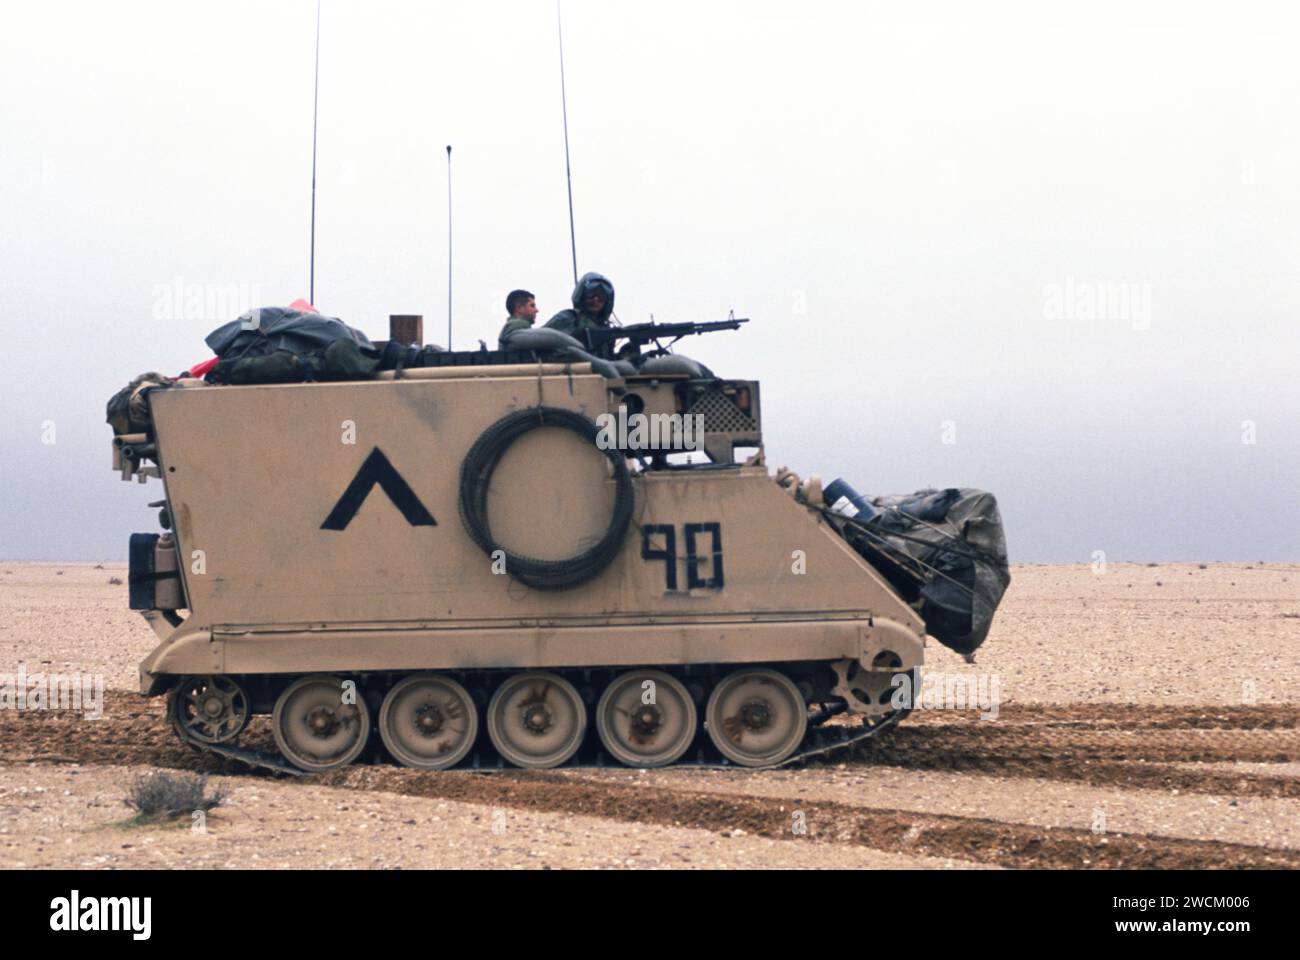 25 février 1991 un transporteur militaire américain M577 ACP (Armored Command Post) avance dans le désert dans le sud de l'Irak pendant la guerre du sol. Banque D'Images